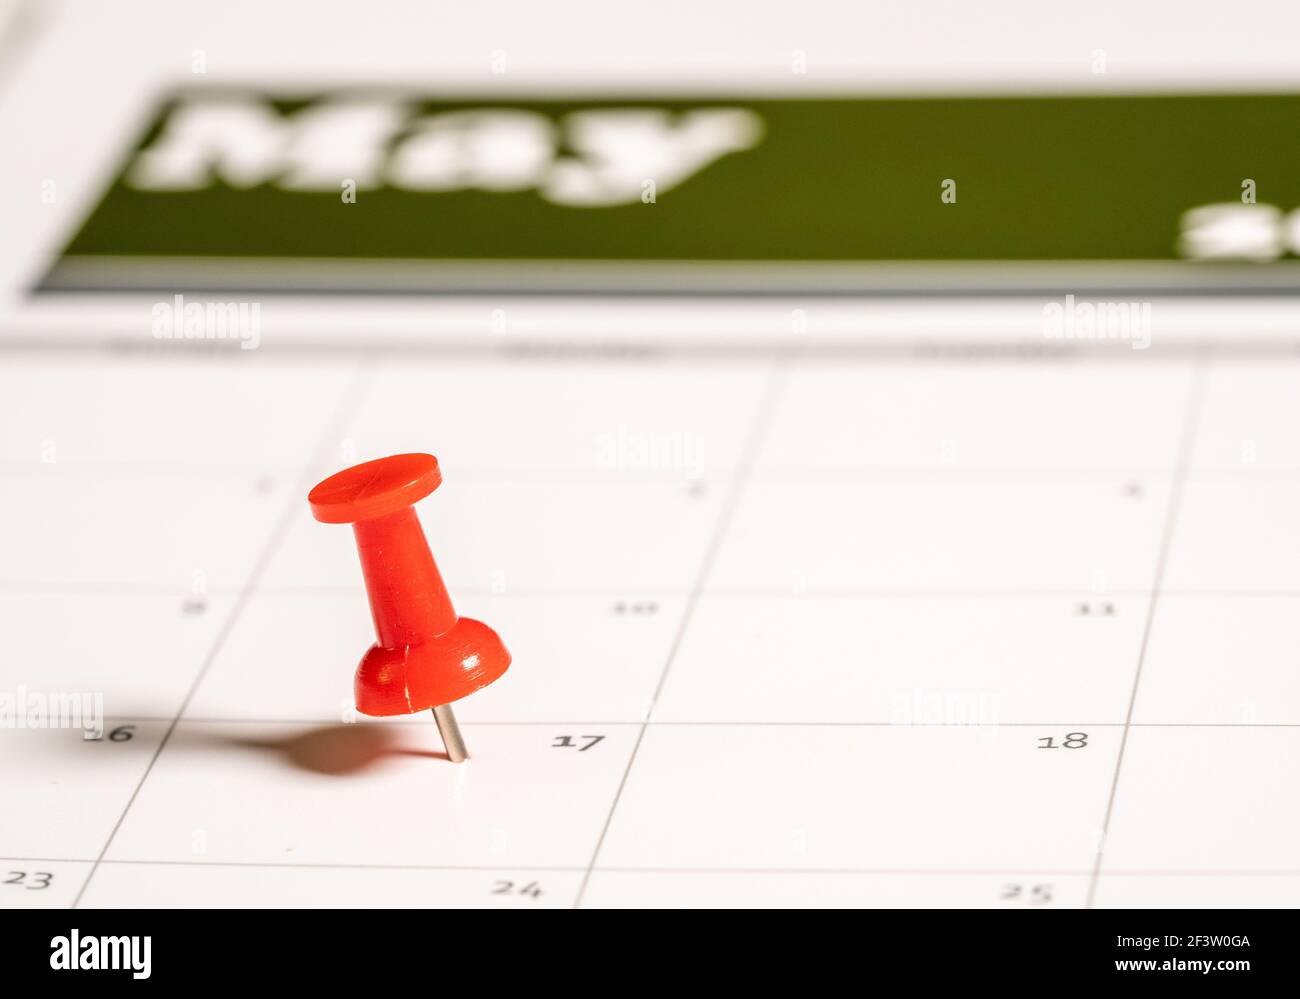 Calendario con spintino inserito nella data di maggio 17 per illustrare la nuova data di deposito della dichiarazione dei redditi del 17 maggio 2021. Foto Stock